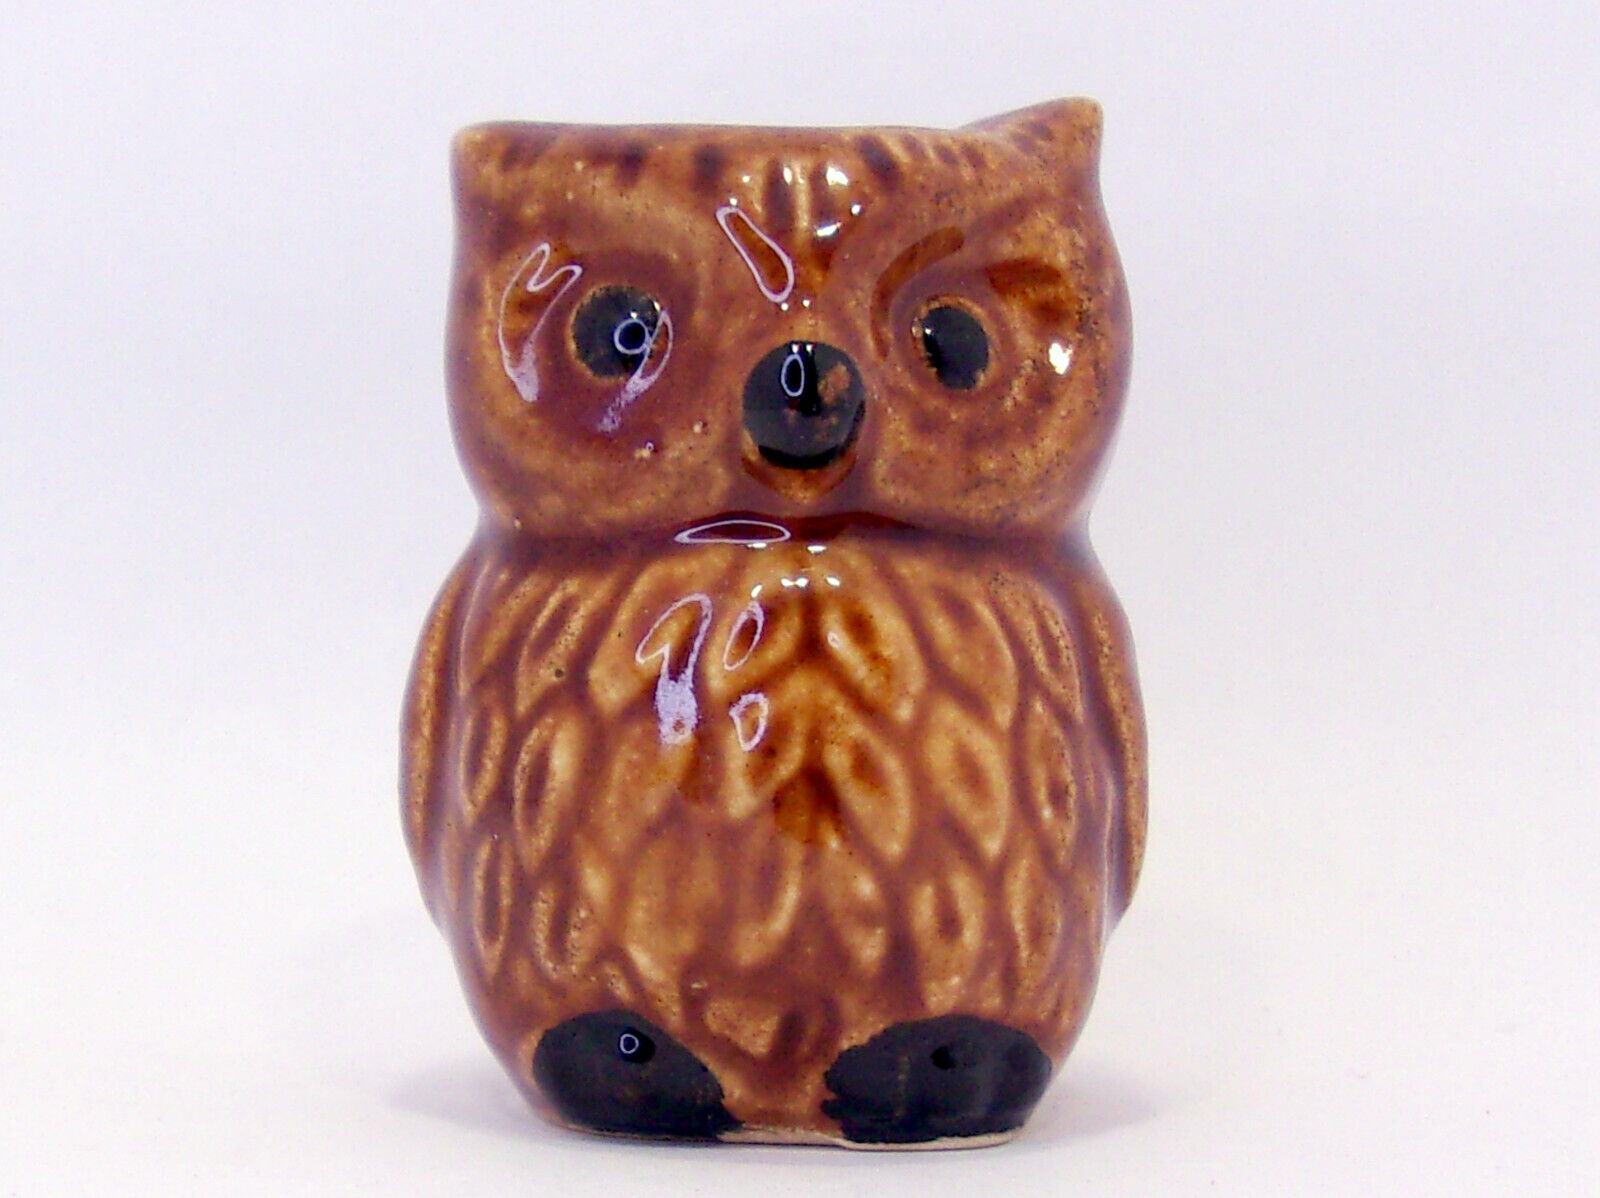 Brown Owl Ceramic Toothpick Holder - Vintage 60s 70s Retro Kitsch Kitchen Decor